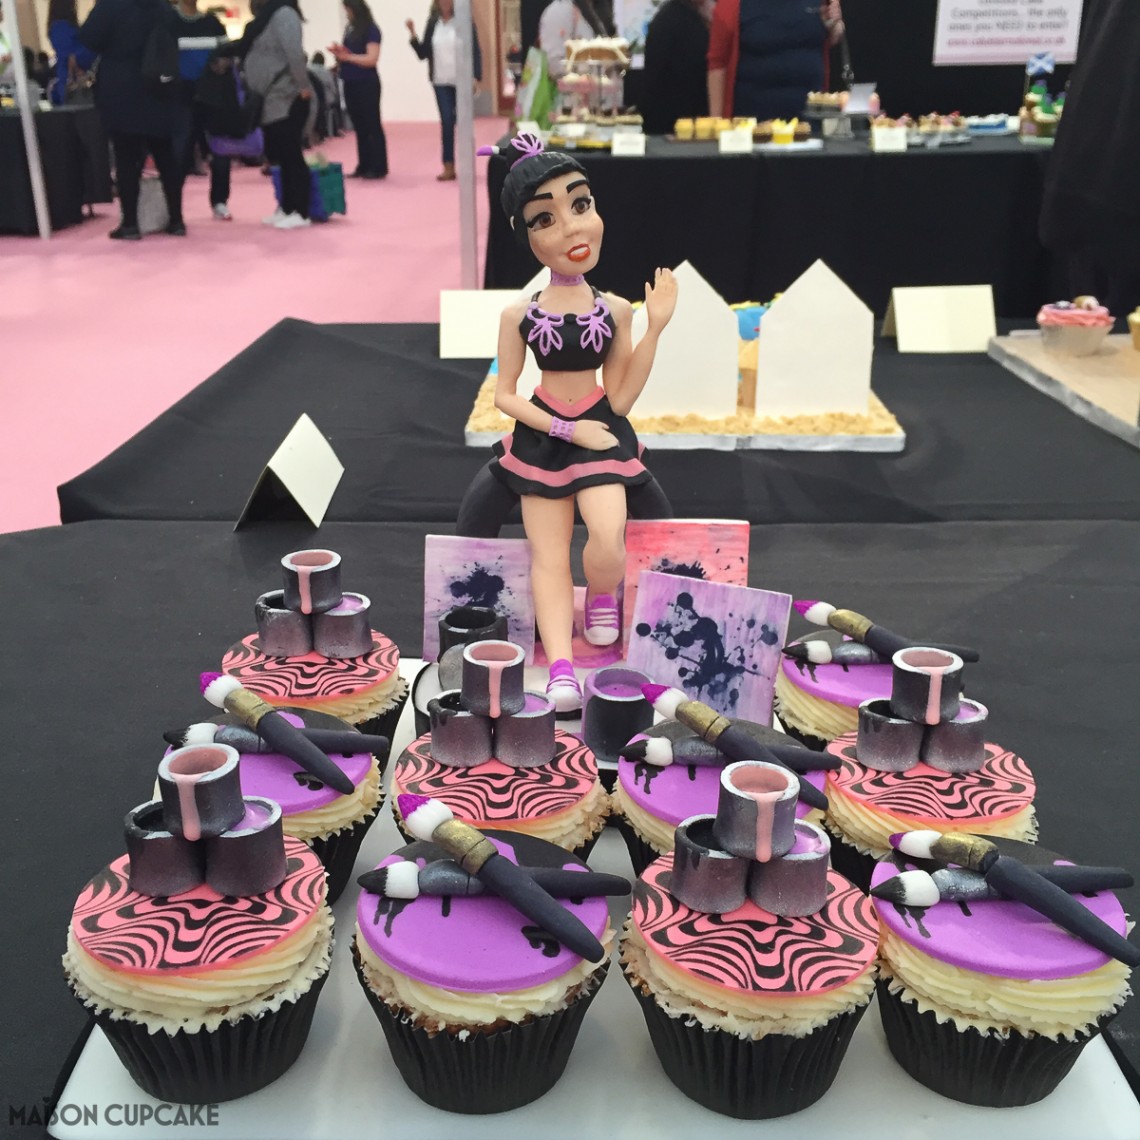 Burlesque cupcakes